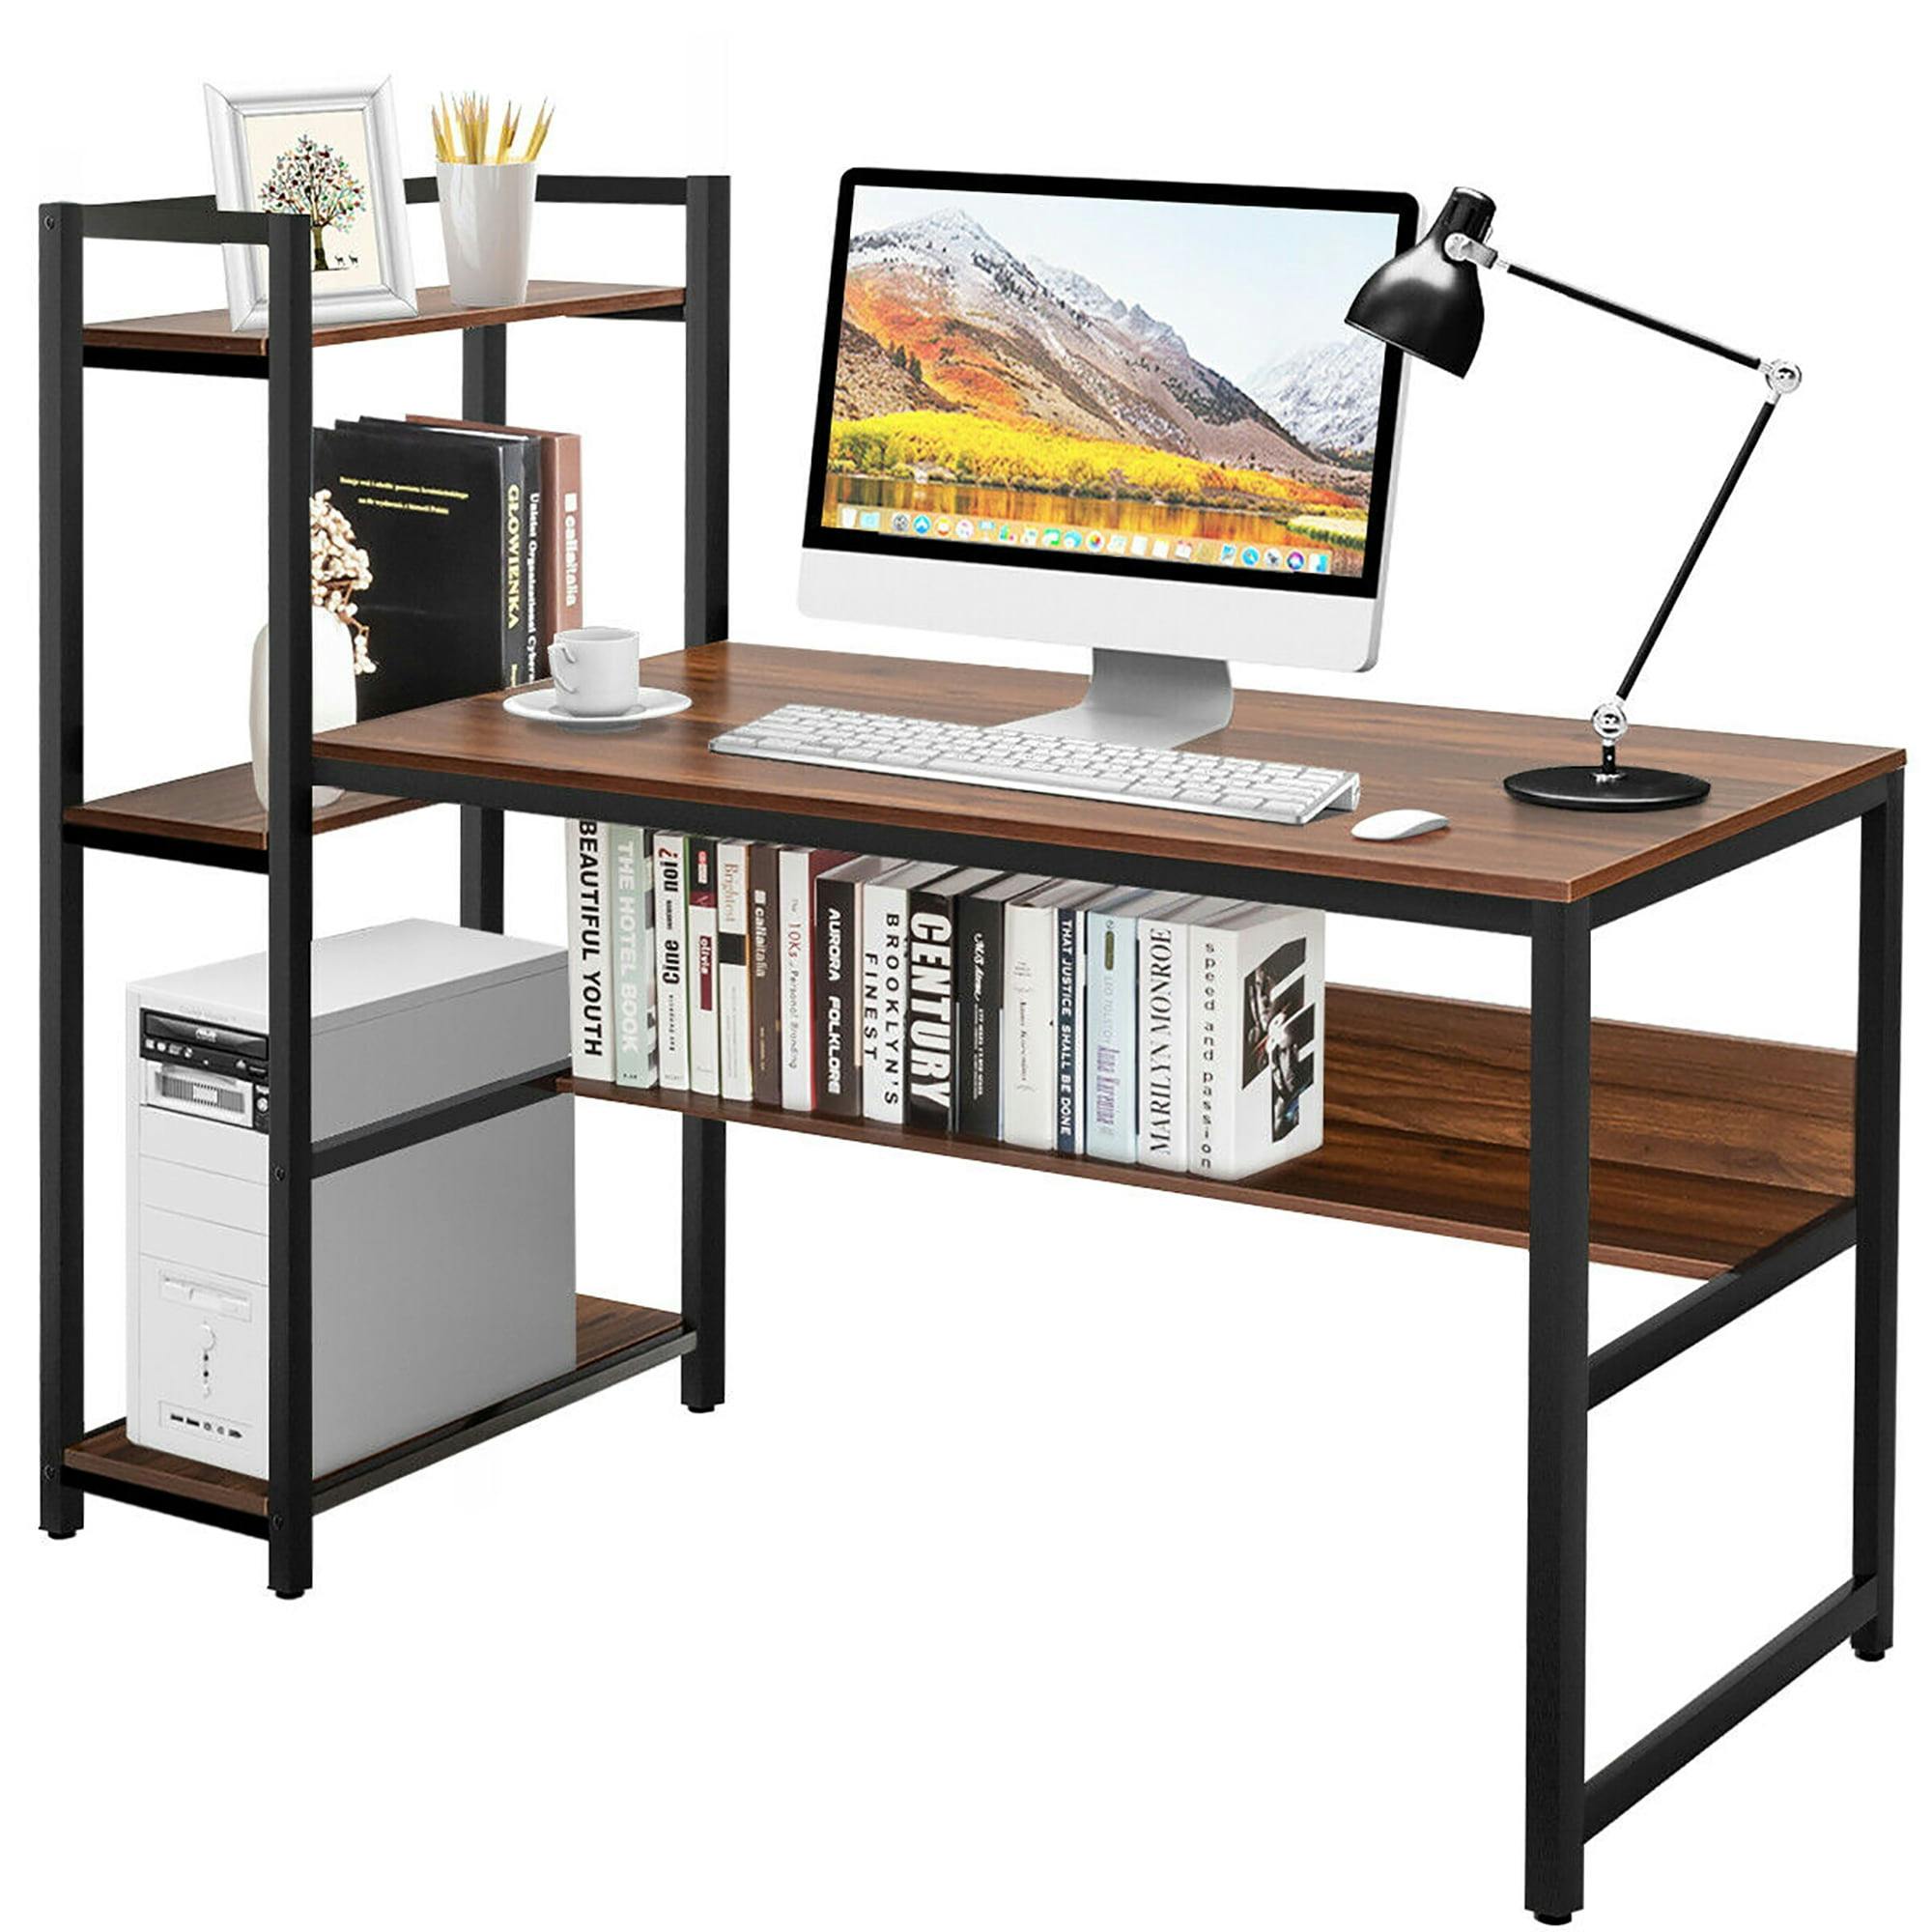 Elegant Walnut L-Shaped Computer Desk with Metal Frame and Storage Shelves